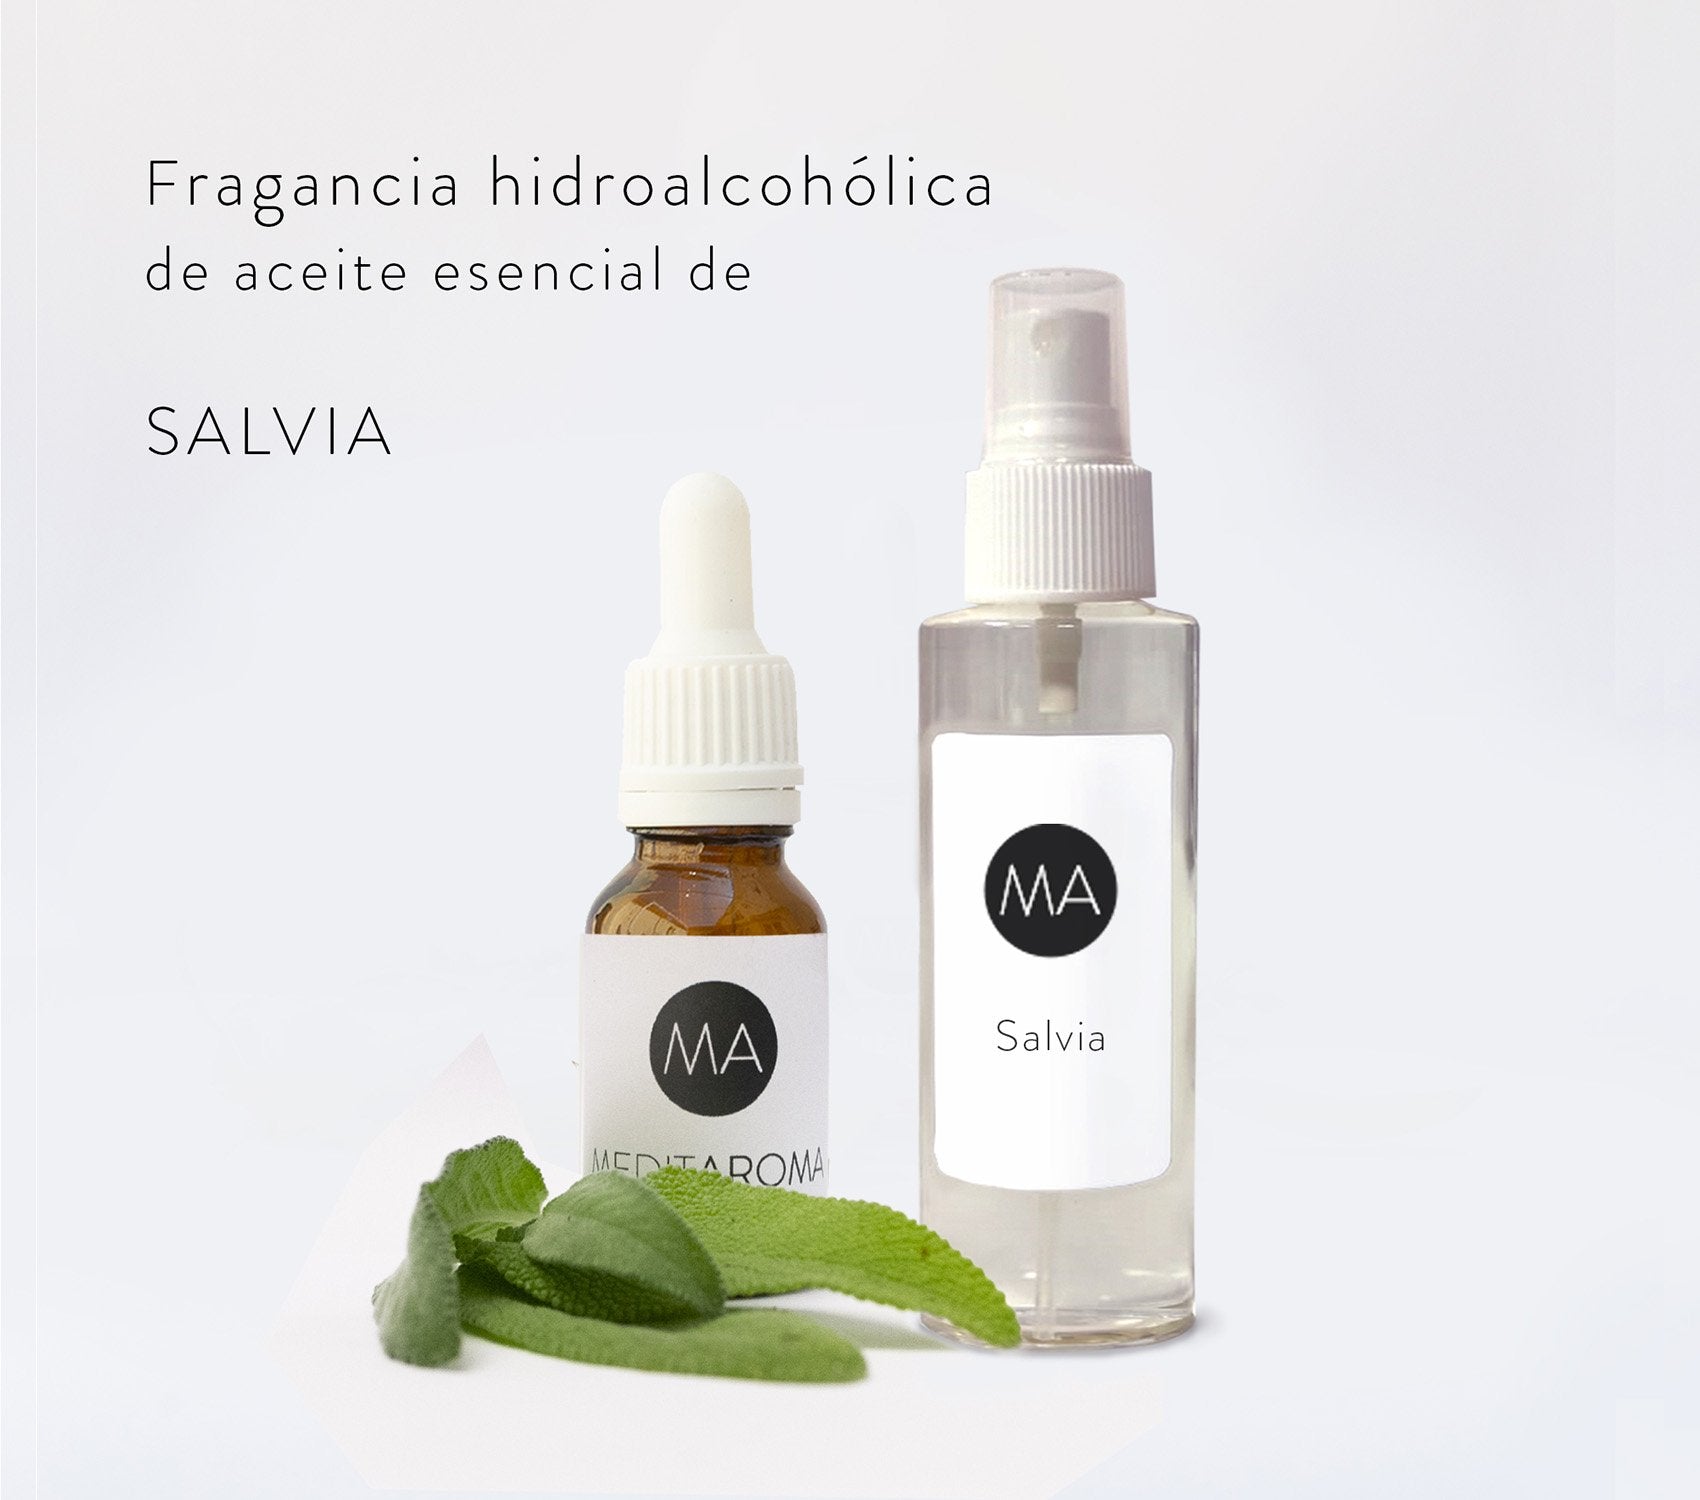 Fragancia Hidroalcohólica de Aceite Esencial Salvia.